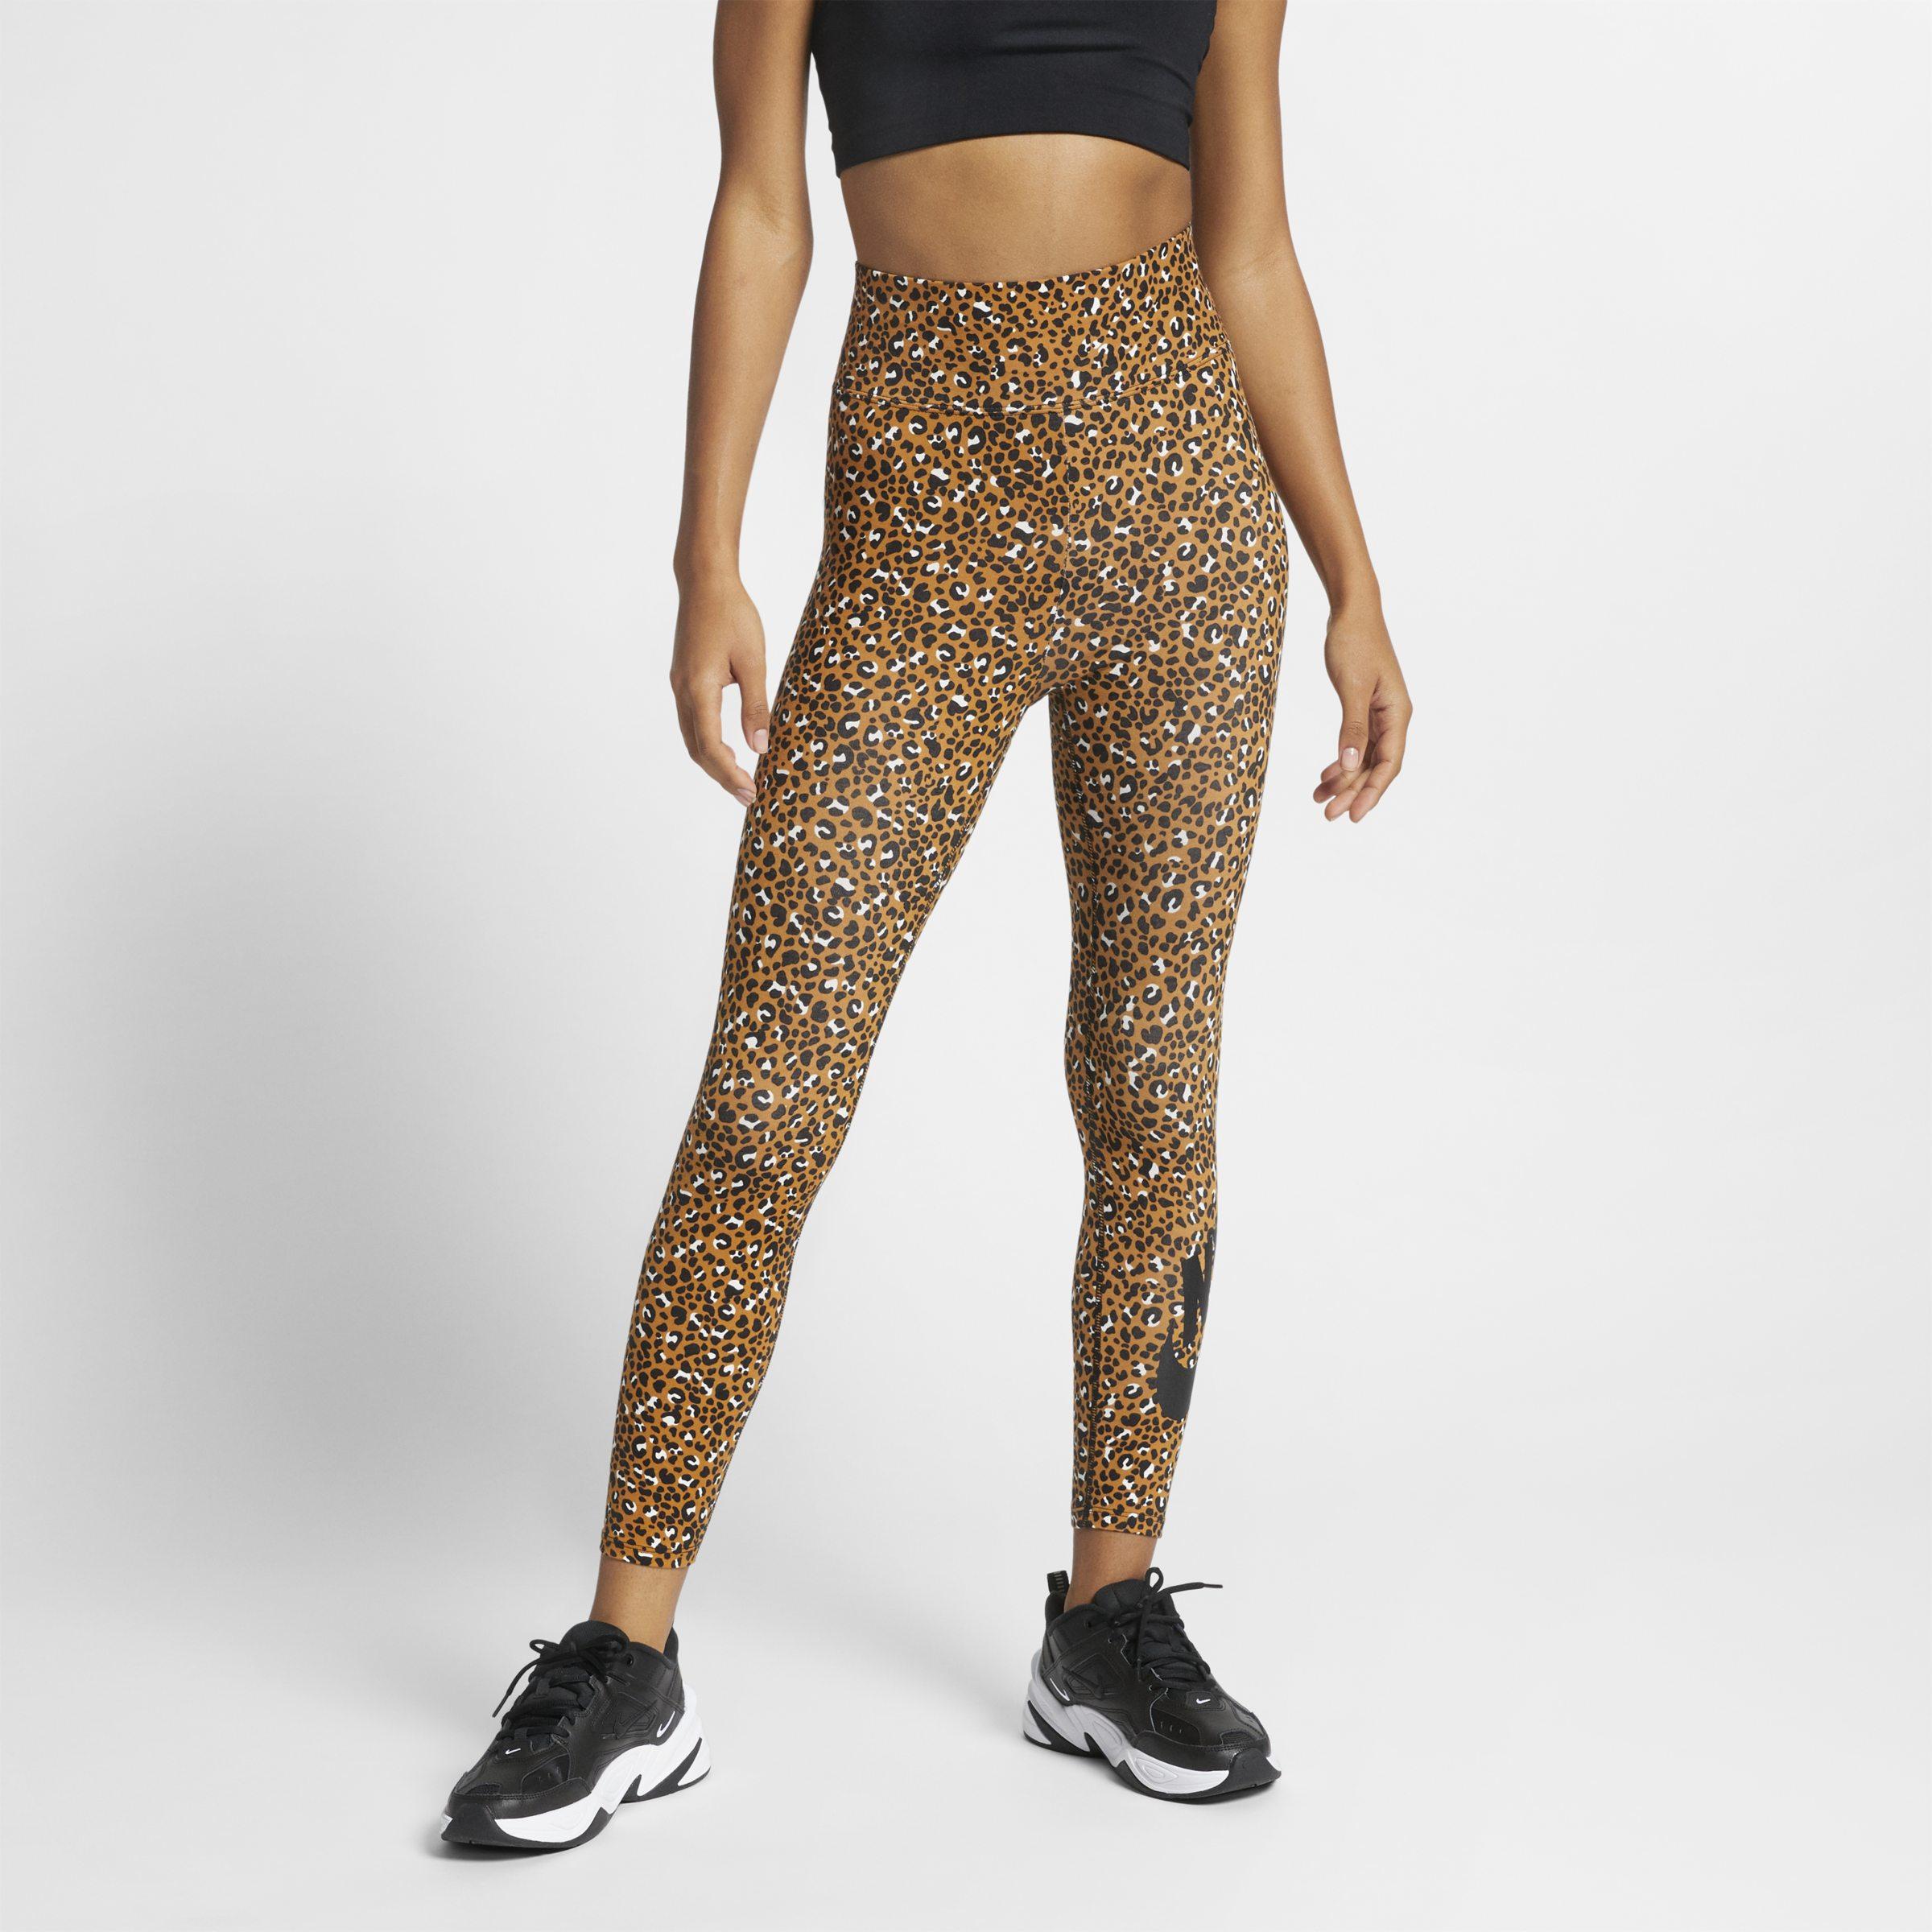 leopard print leggings nike Off 59% - yaren.com